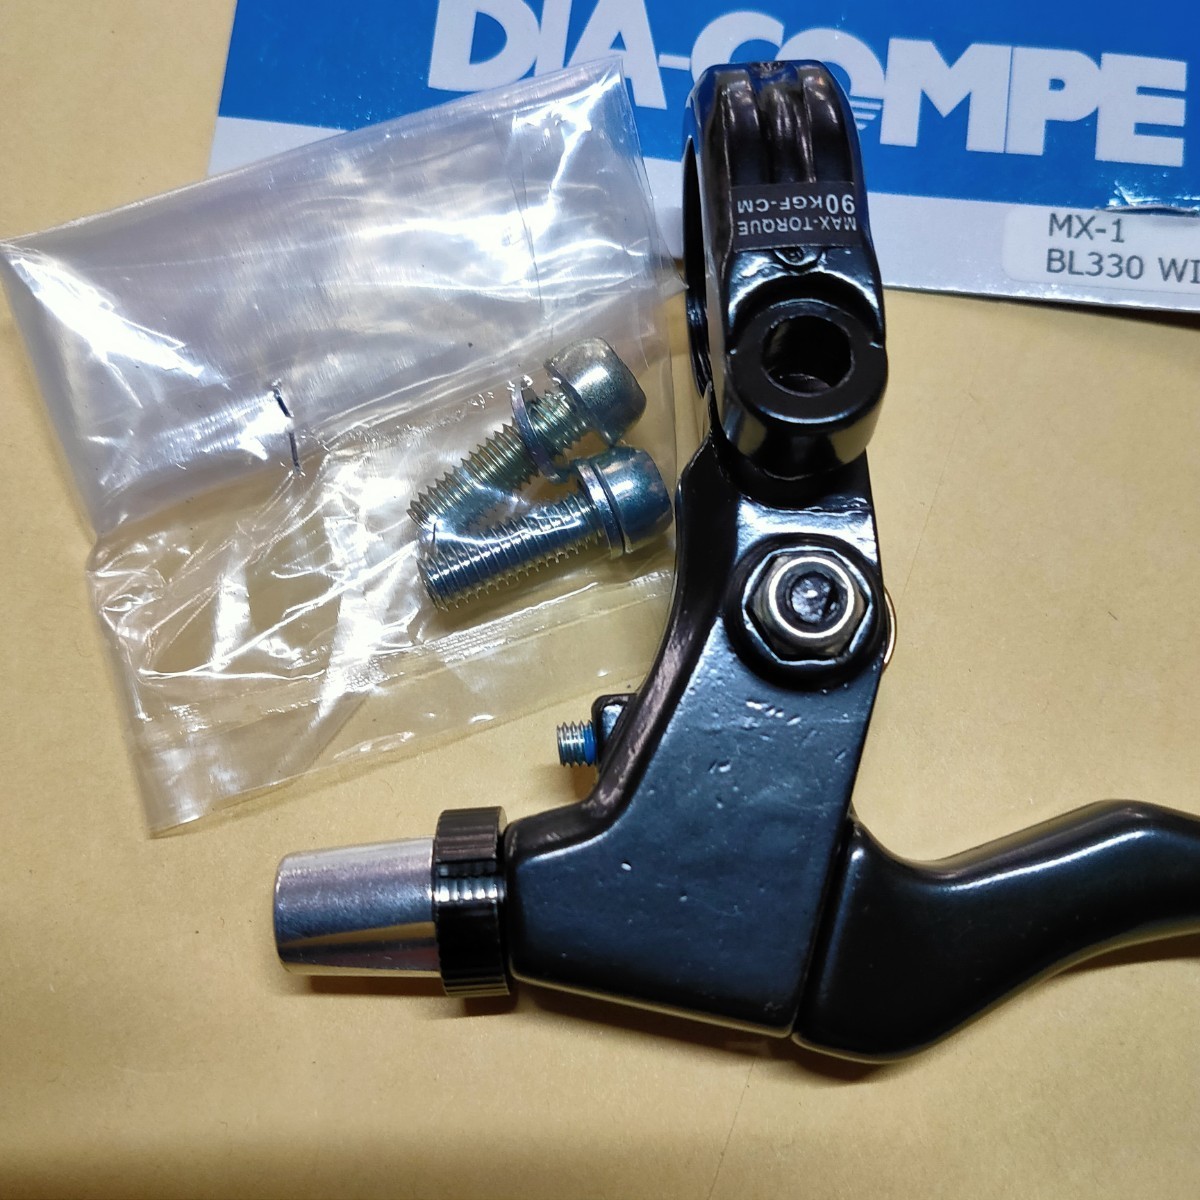 【新品送料無料】 ブレーキレバー MX-1 BL330 WIN ブラック ダイアコンペ DIACOMPE 【関連】 ダイヤコンペ 修理 部品 自転車 DIA-COMPE_画像2